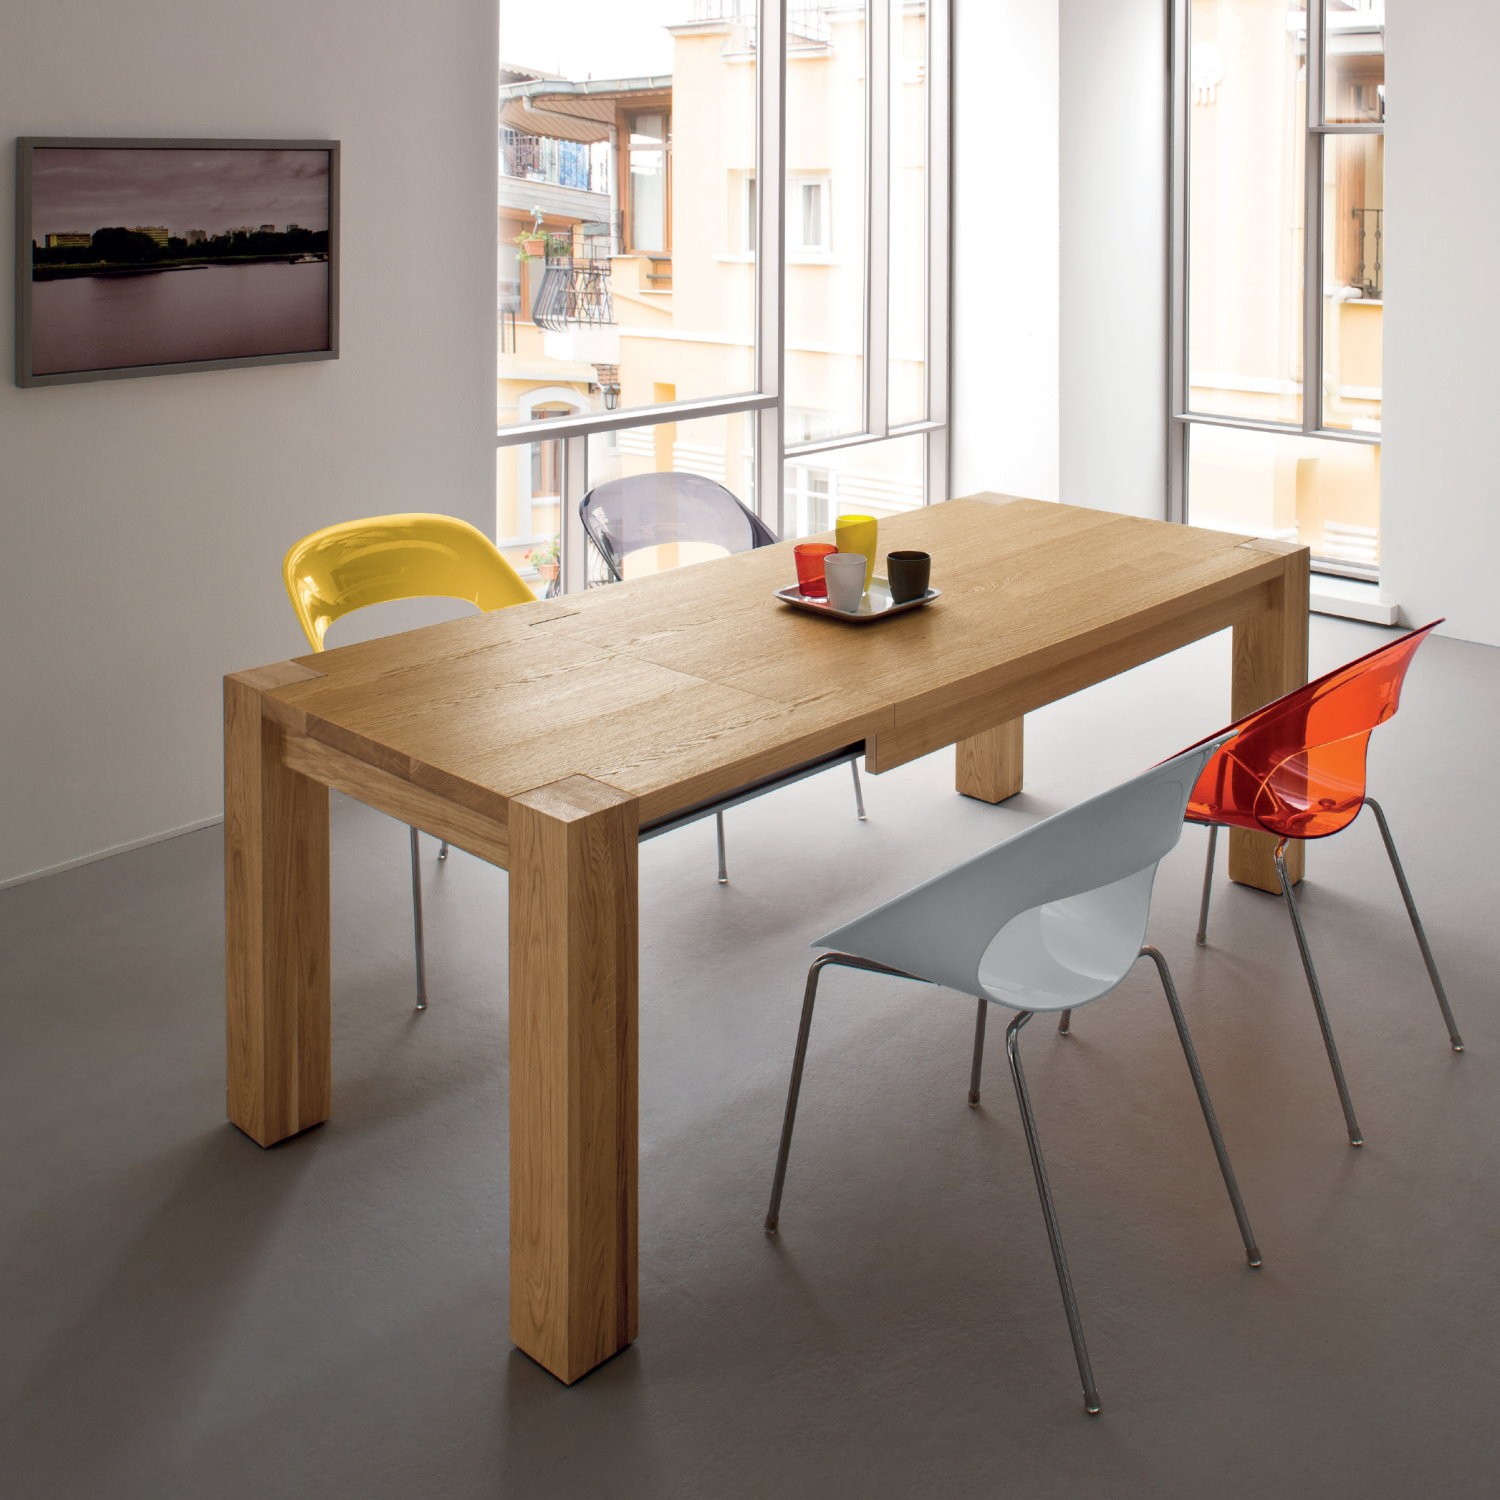 idee tavolo da cucina resistente e pratico 3 il legno